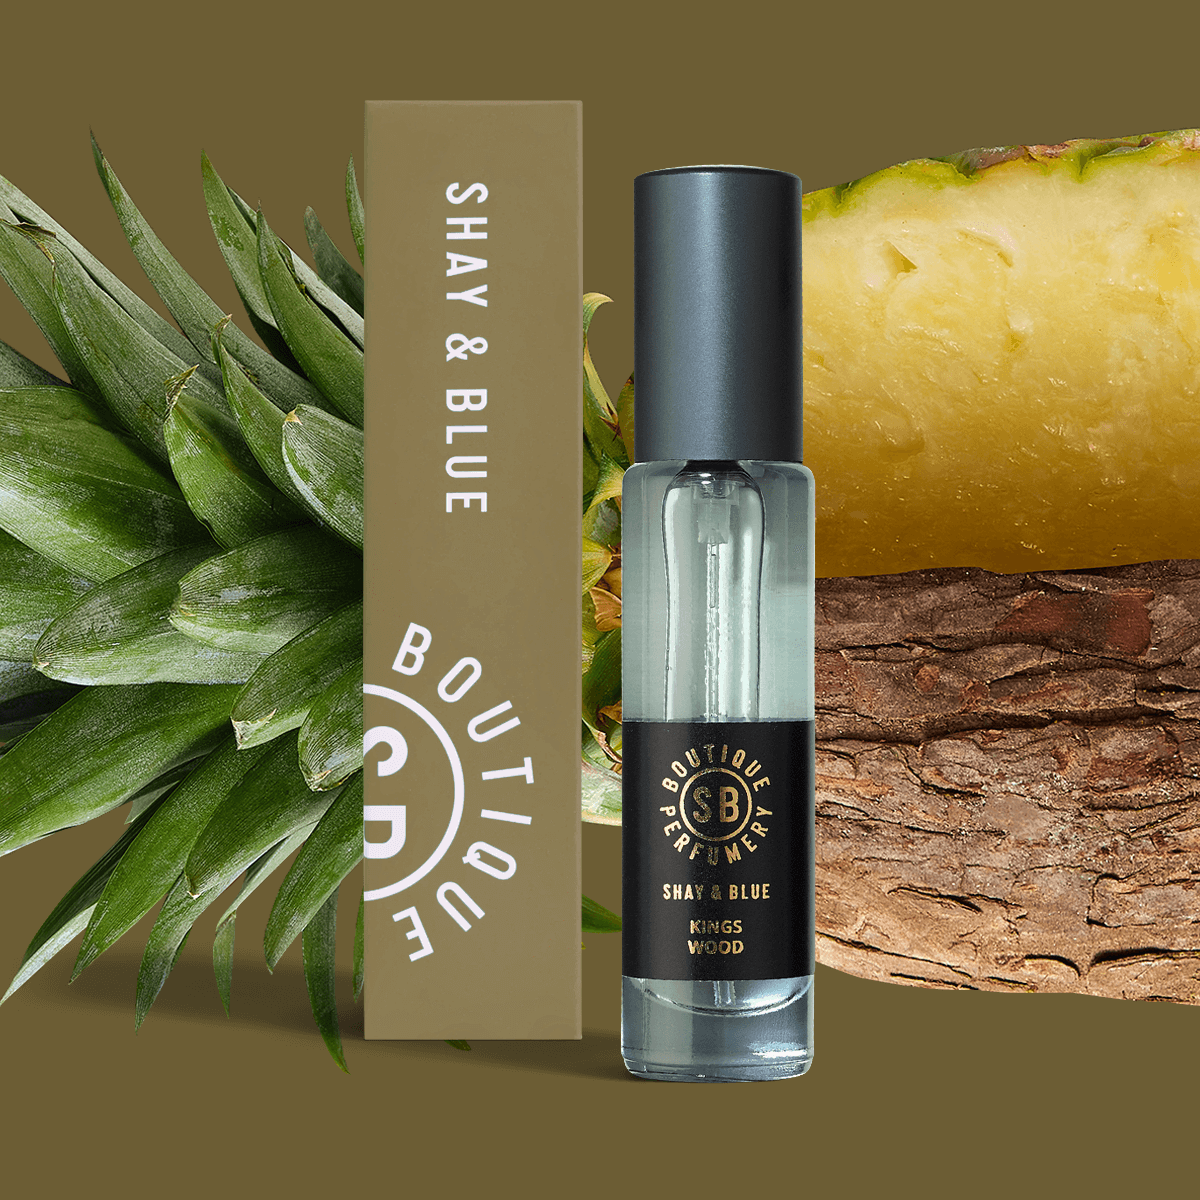 Kings Wood Geurconcentraat 10ml | Frisse ananas met het natuurlijke aroma van fearn bladeren. | Schone geur voor mannen en vrouwen Shay & Blue